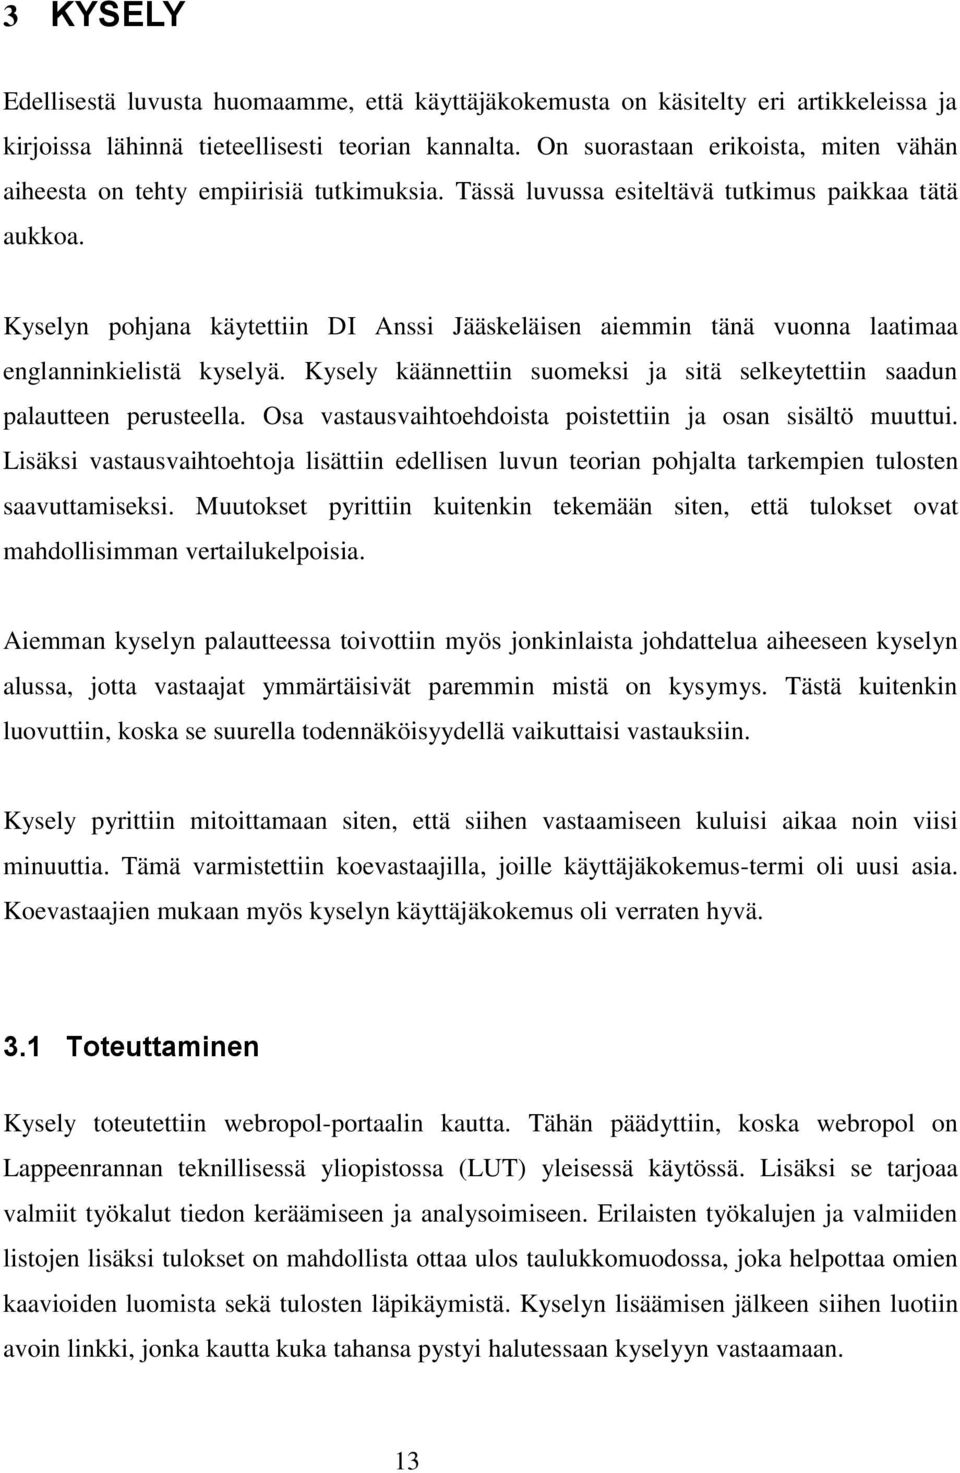 Kyselyn pohjana käytettiin DI Anssi Jääskeläisen aiemmin tänä vuonna laatimaa englanninkielistä kyselyä. Kysely käännettiin suomeksi ja sitä selkeytettiin saadun palautteen perusteella.